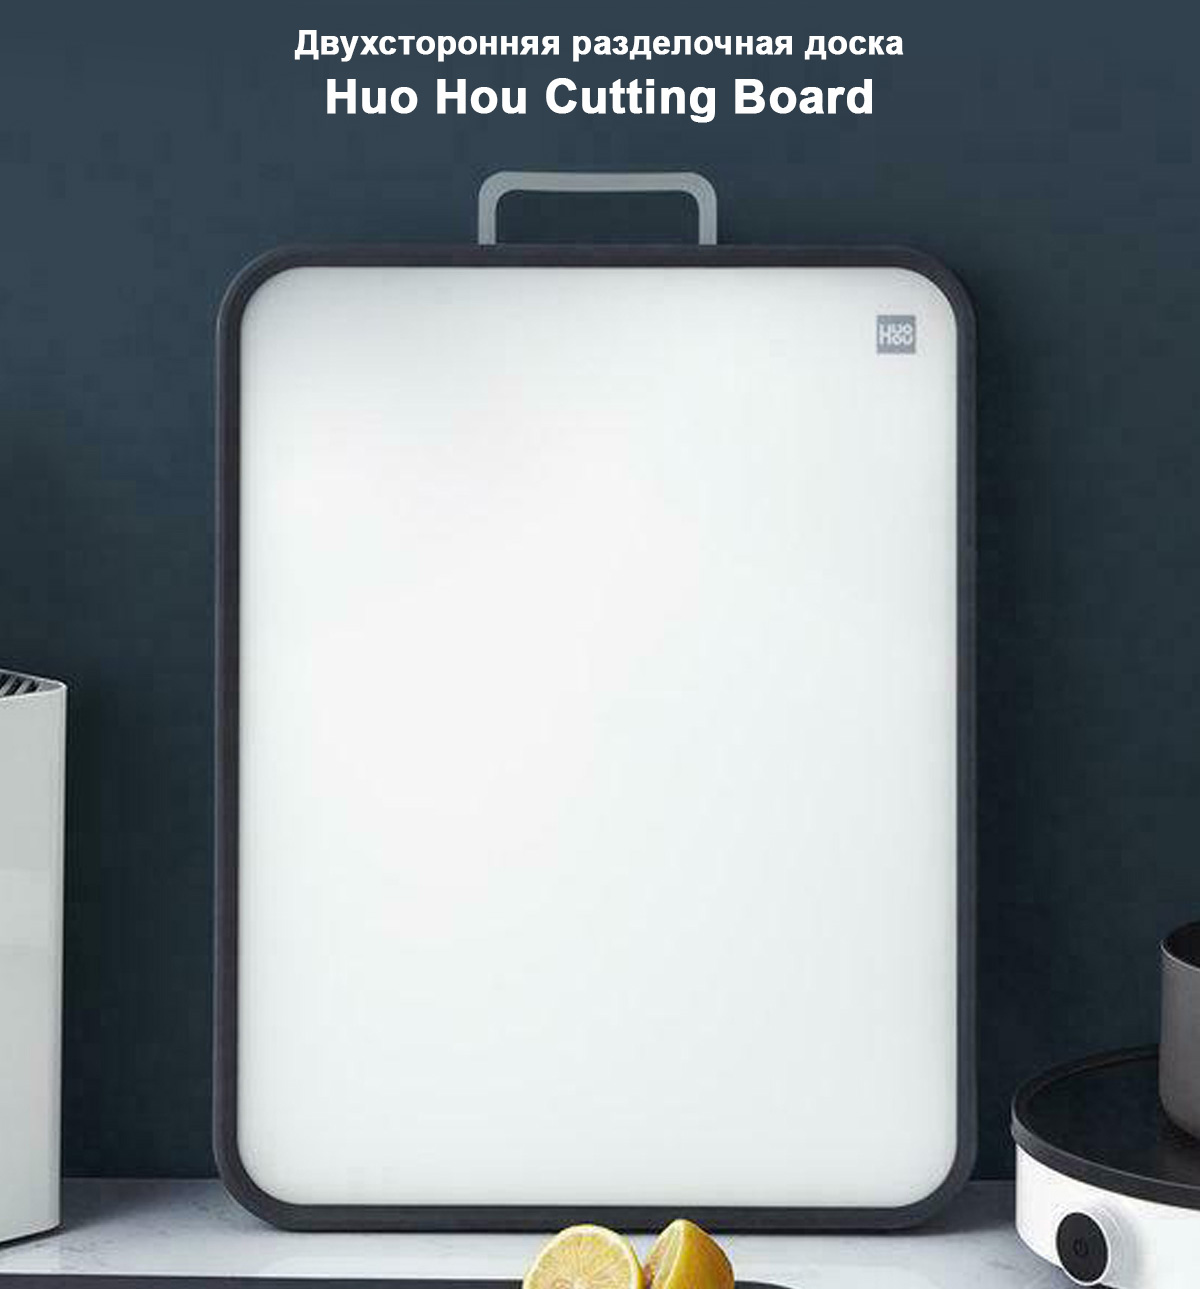 Двухсторонняя разделочная доска Huo Hou Cutting Board (HU0136)